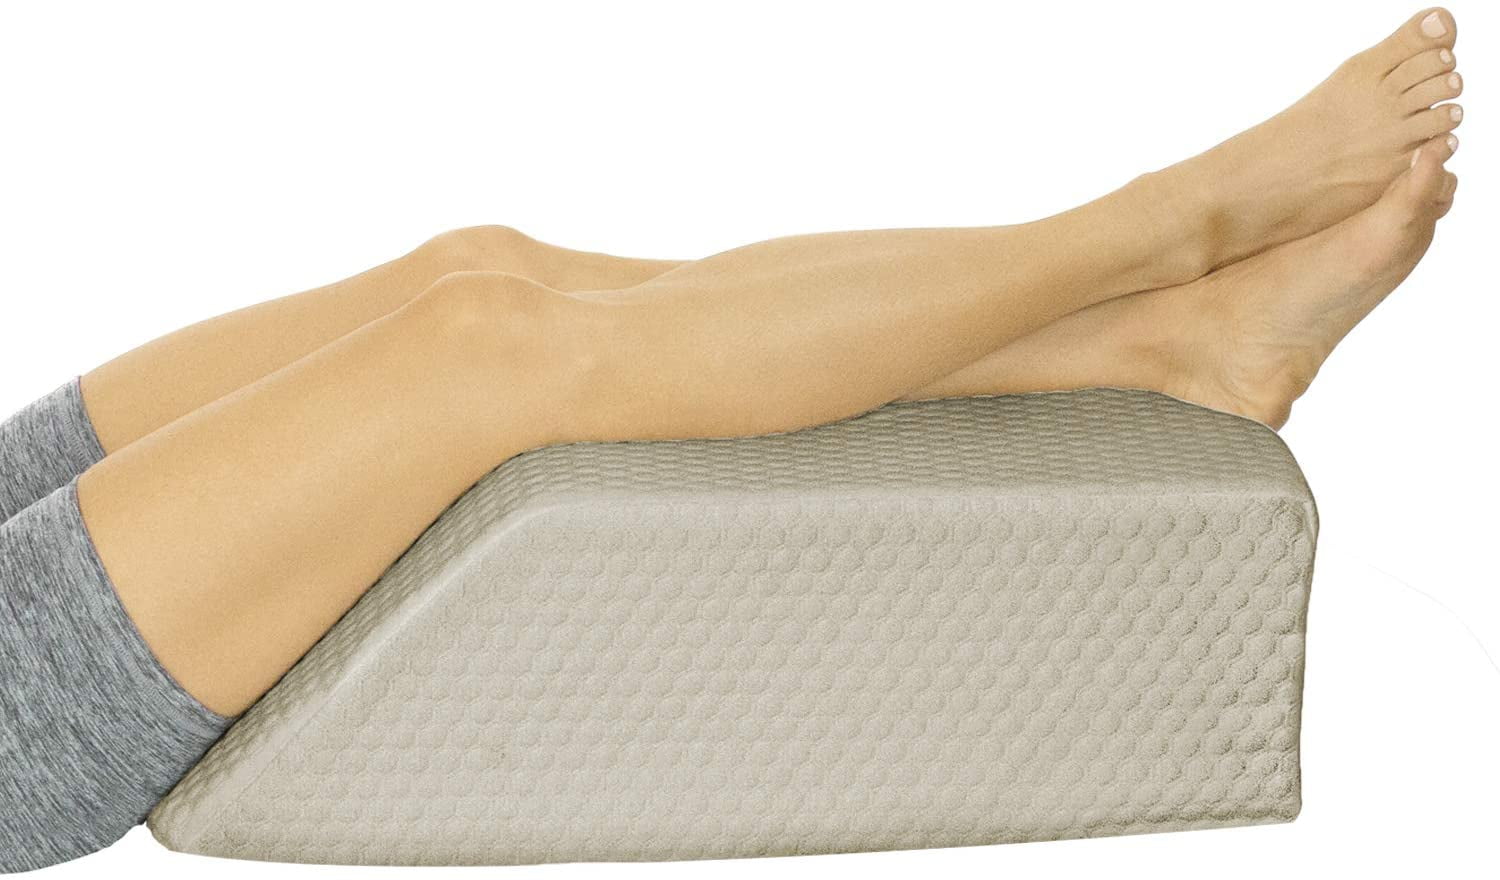 1 Foam Bed Wedge Pillow /Leg Pillow Terry Cover 27" Wide x 24" Long x 10 